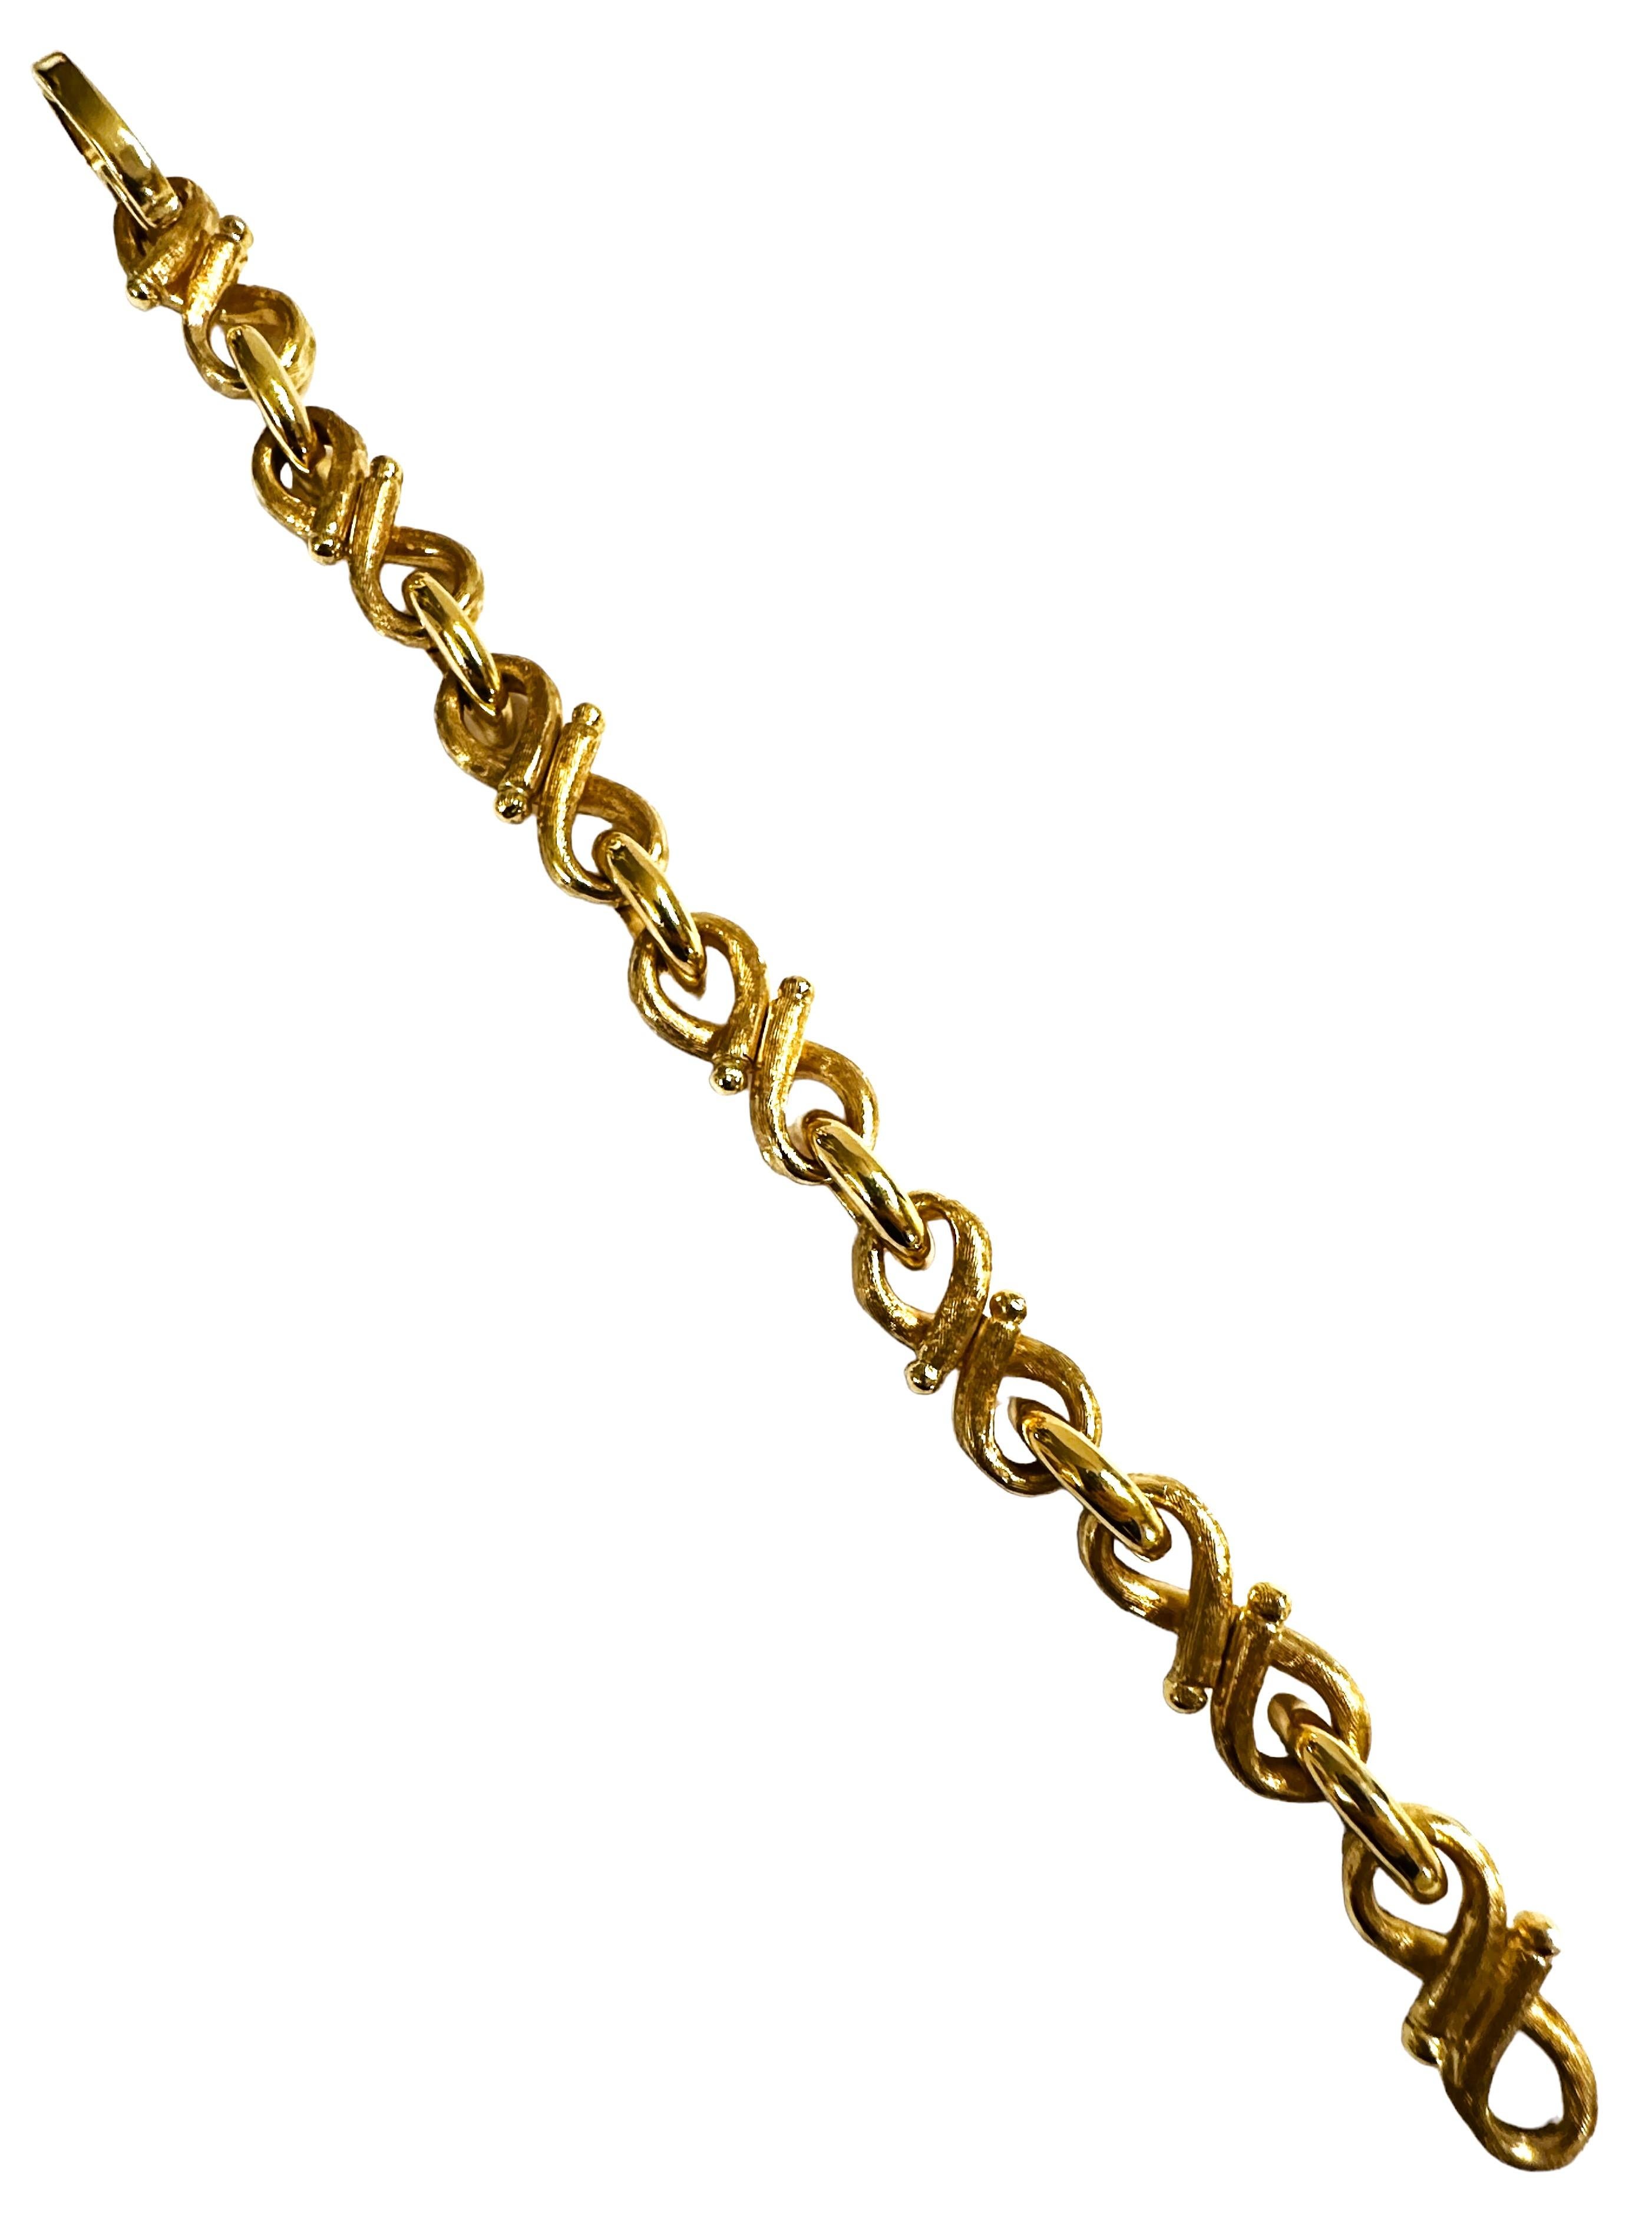 Women's 14k Yellow Gold Zelman & Friedman Fancy Link Bracelet 43.86 Grams 7.5 Inches